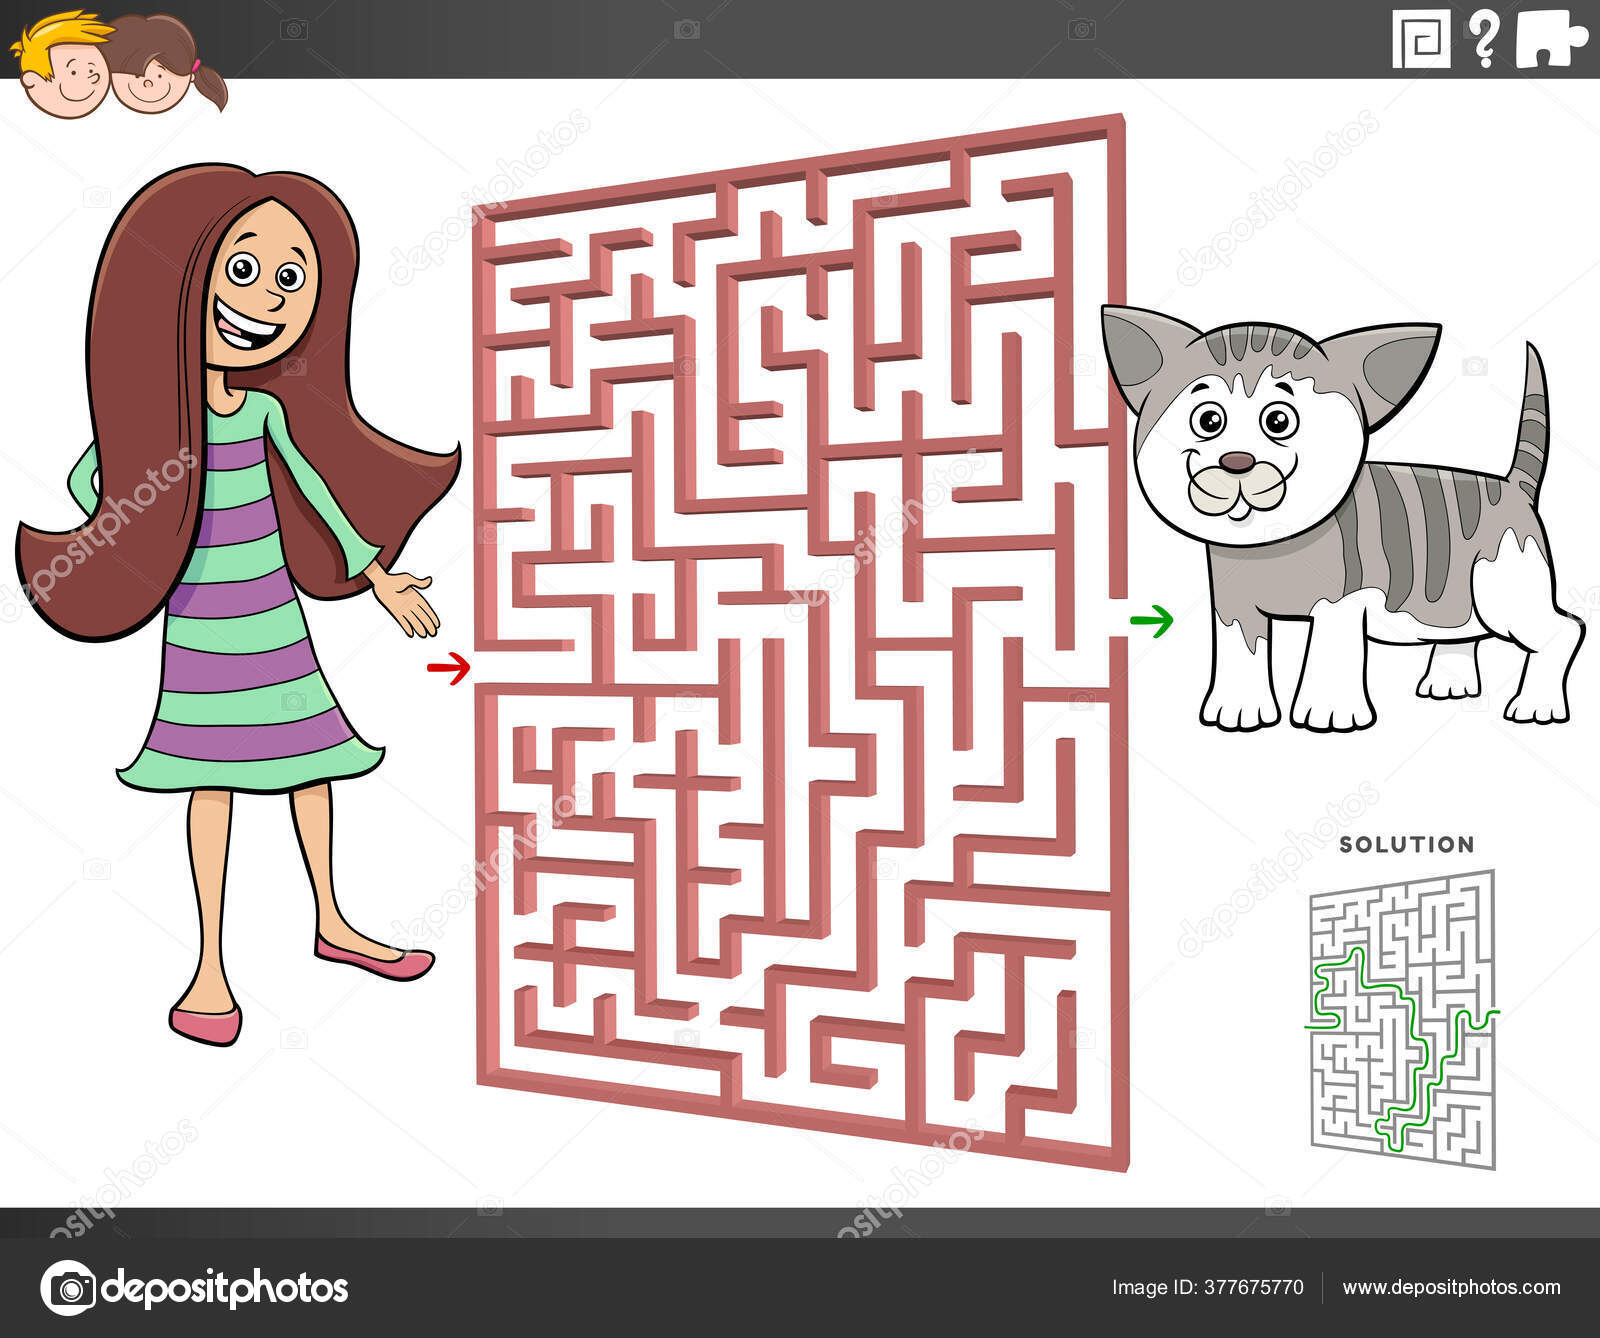 Labirinto de vetores, jogo educacional de labirinto para crianças